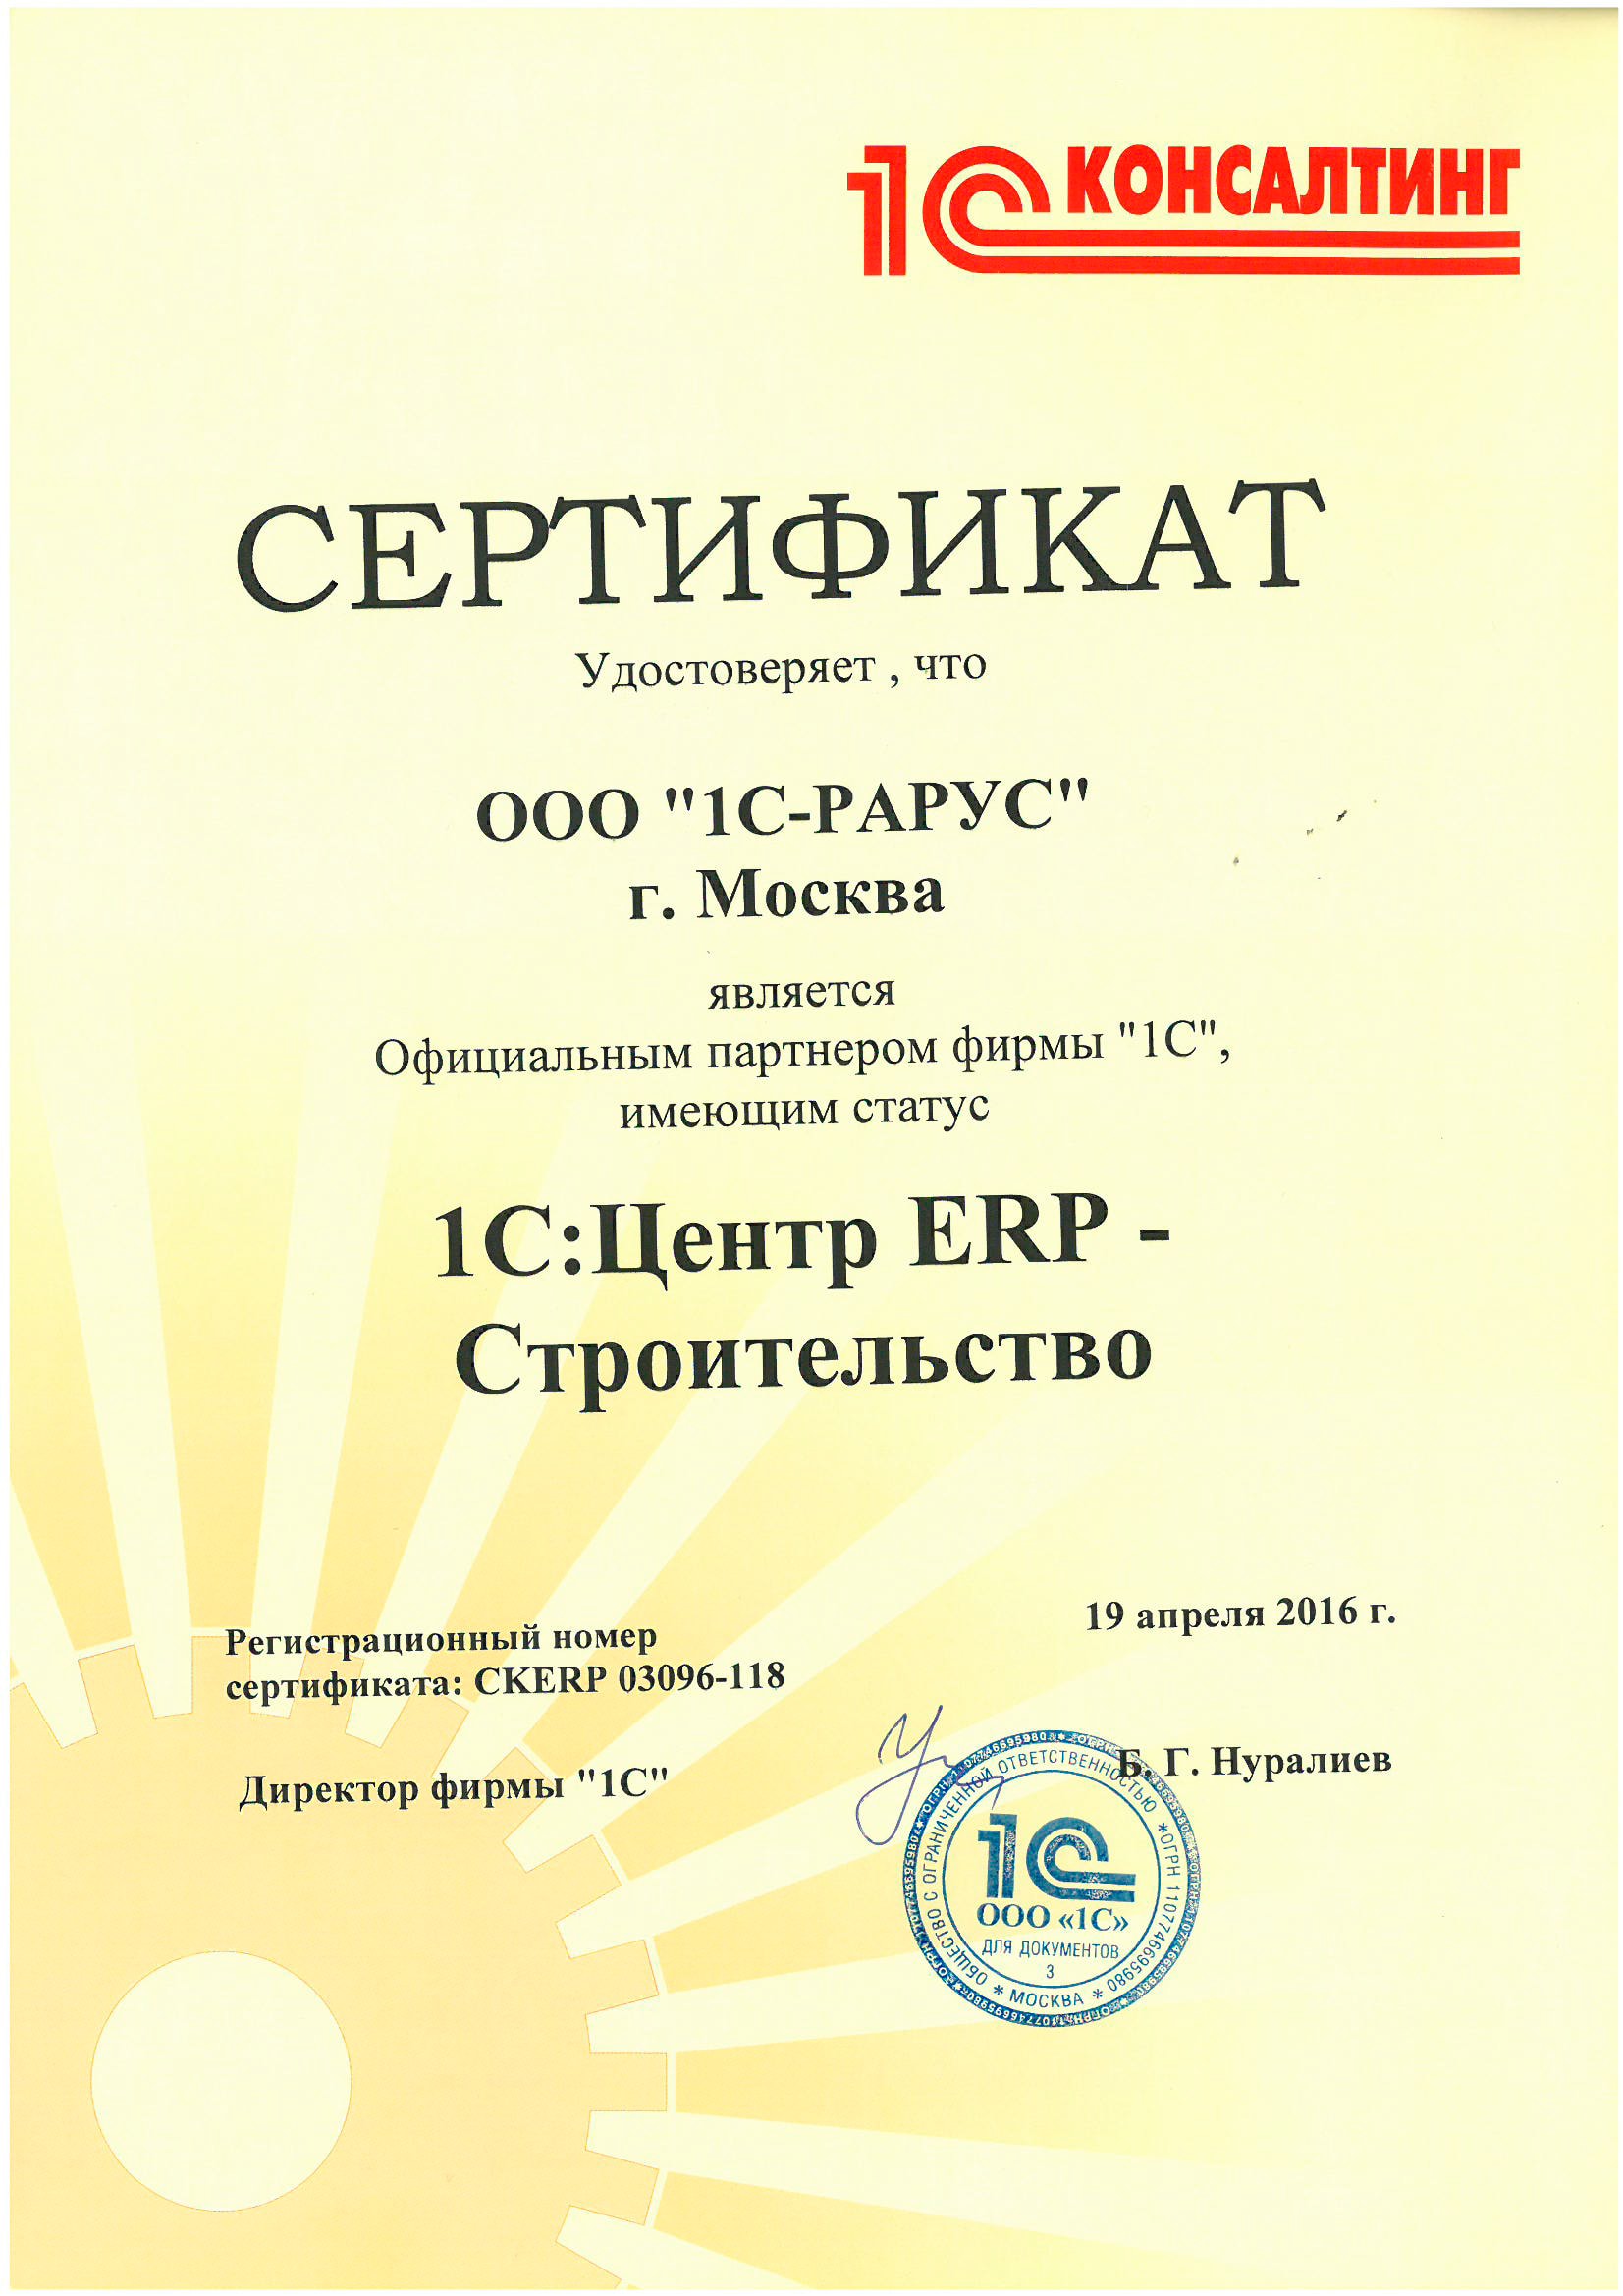 Сертификат «1С» «1С:Центр ERP — Строительство»